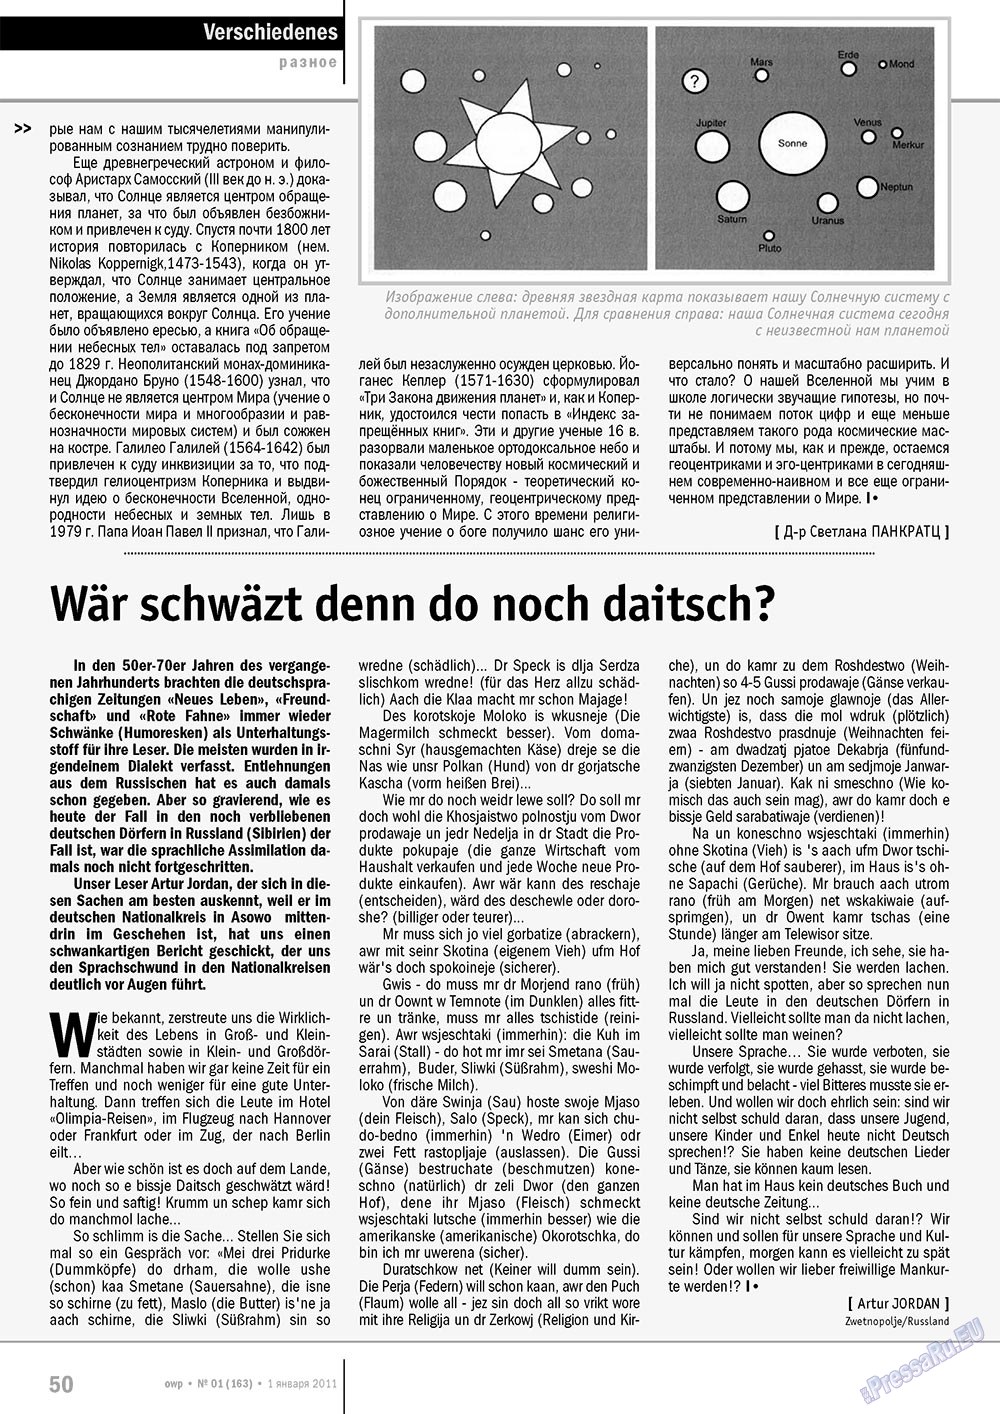 Ost-West Panorama (журнал). 2011 год, номер 1, стр. 50